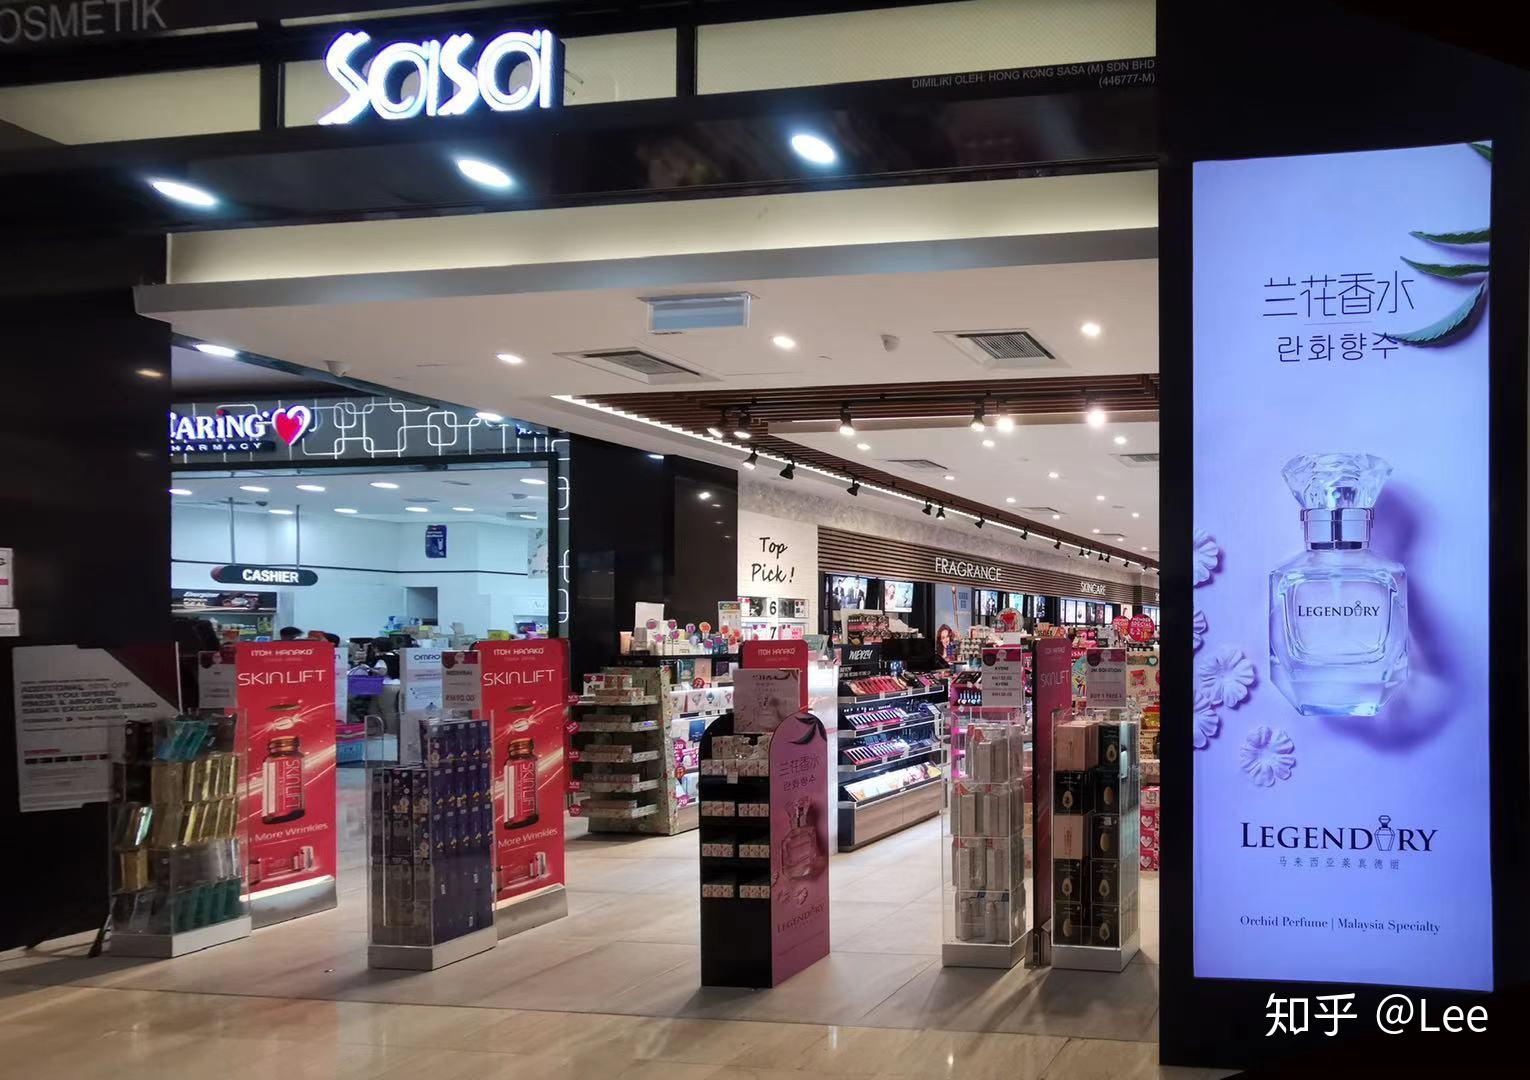 马来西亚LEGENDARY兰花香水品牌引进到中国的SWOT分析